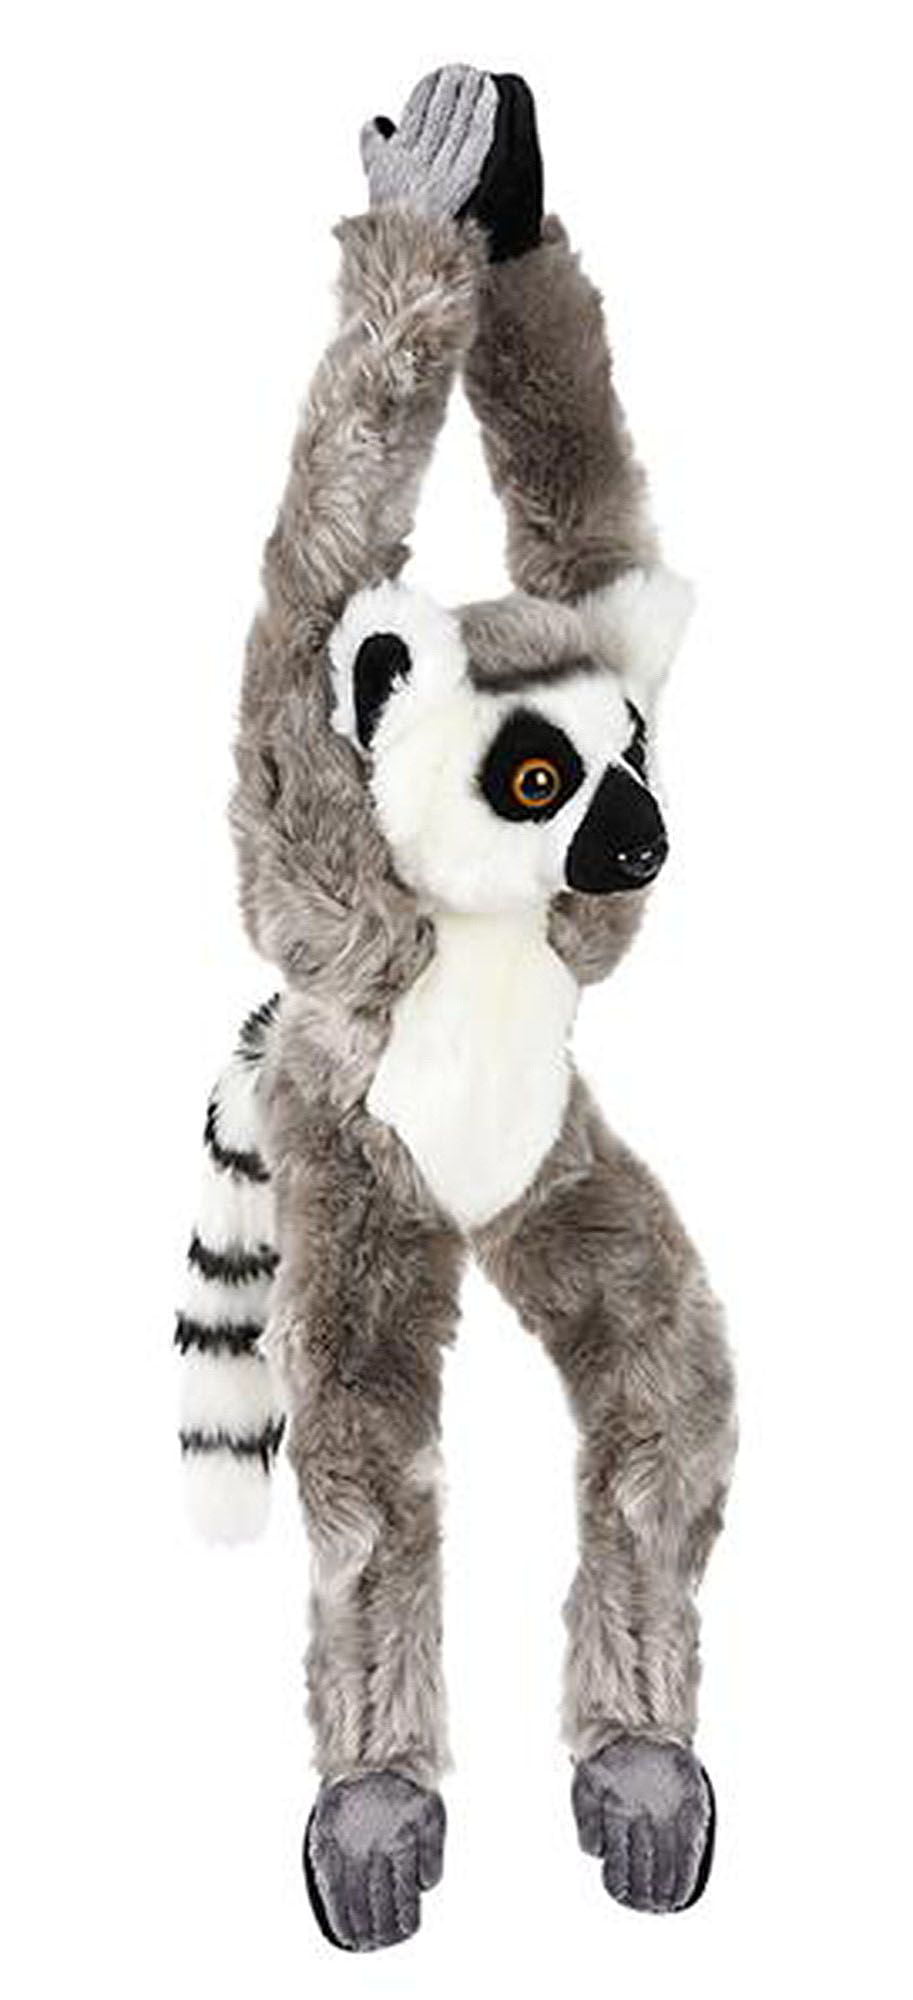 lemur stuffed animal